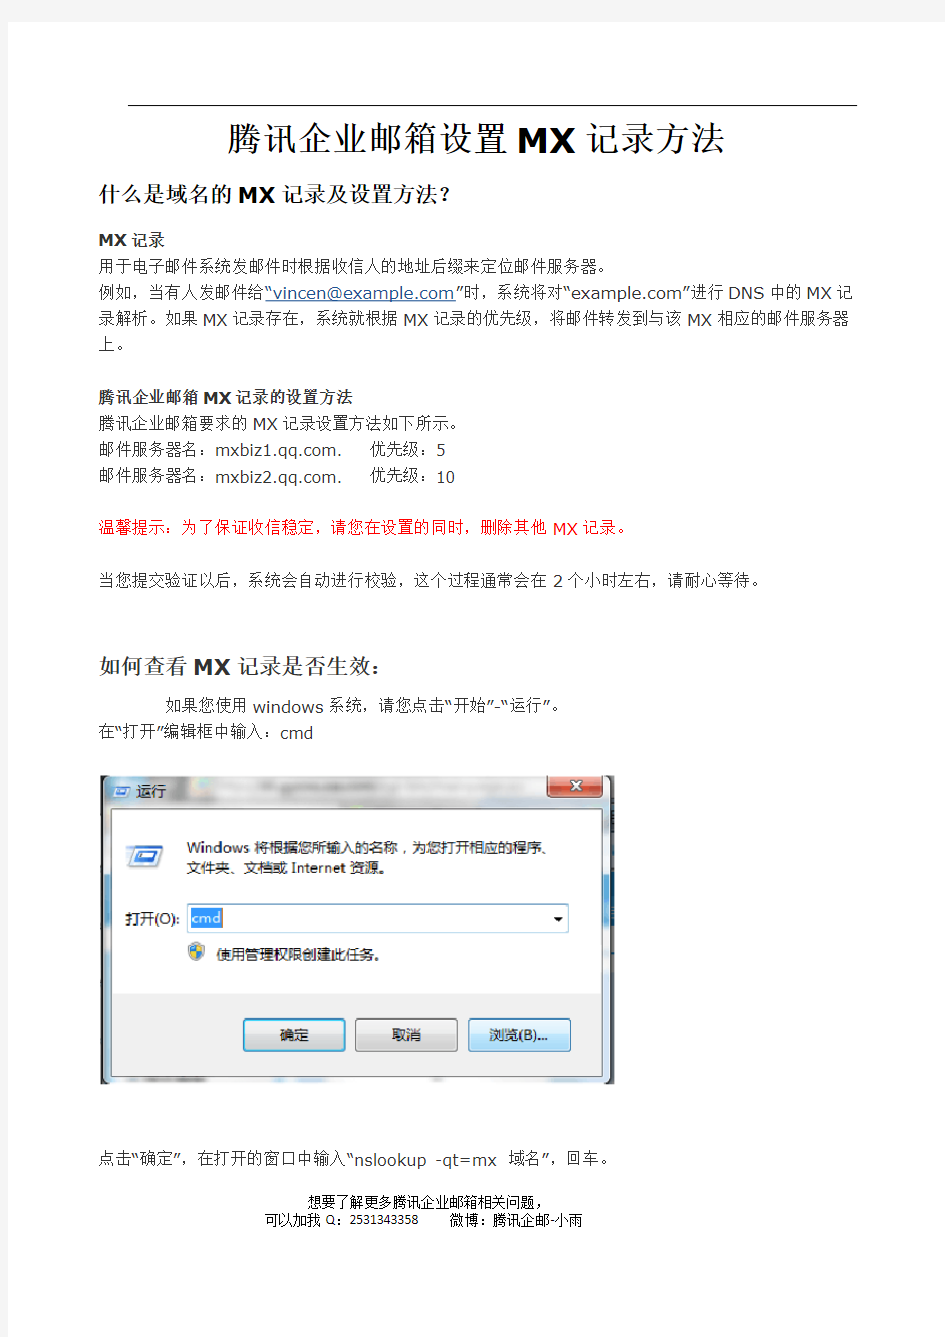 腾讯企业邮箱设置MX记录方法